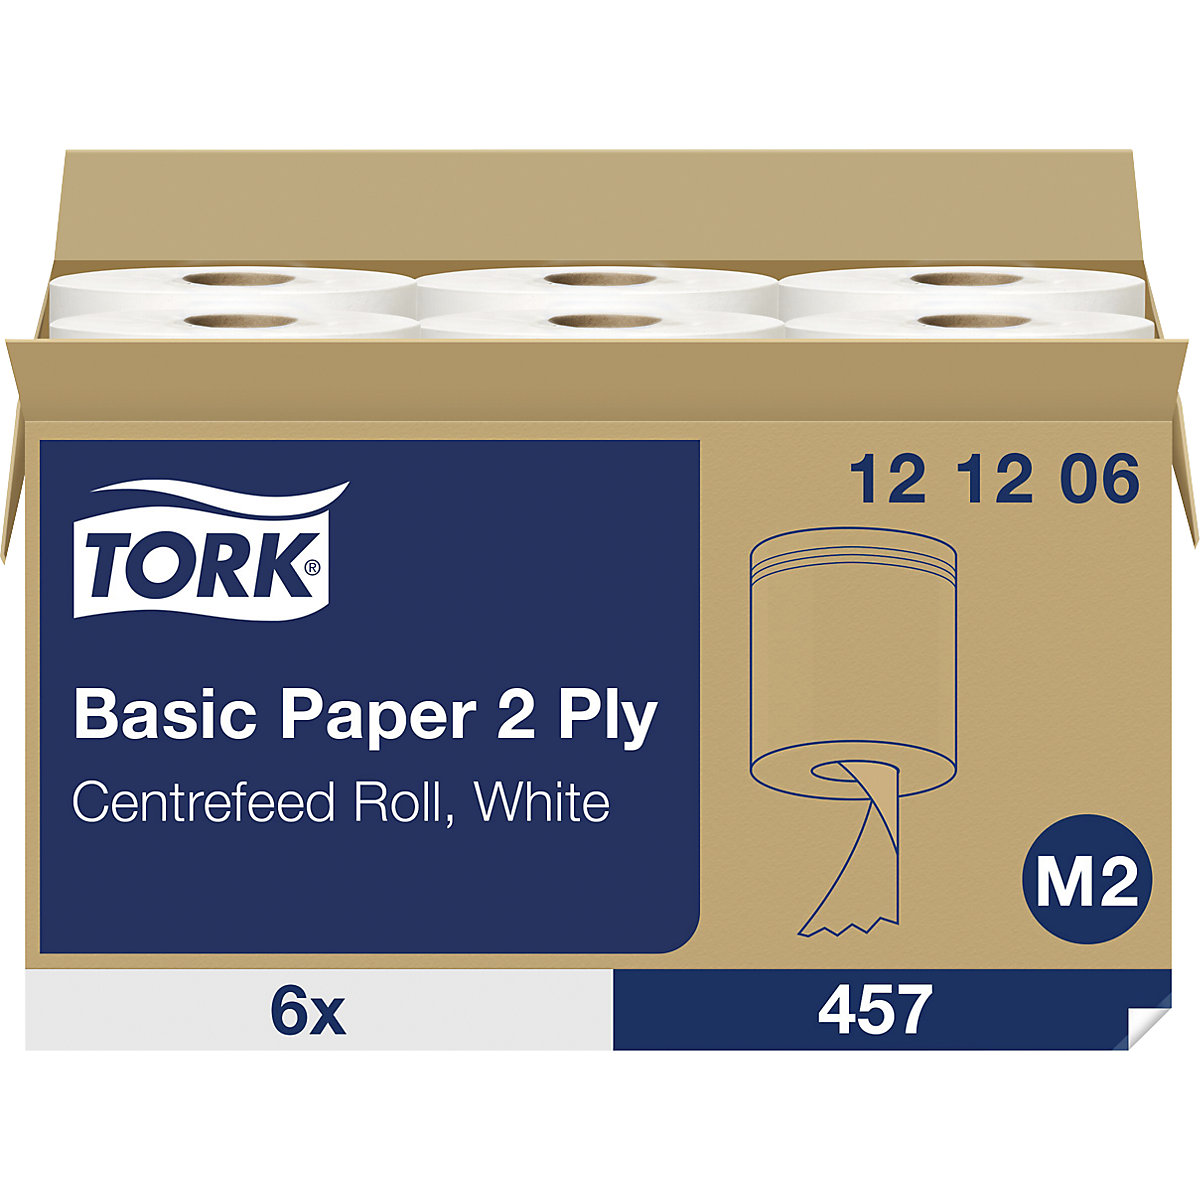 Standardne papirnate krpe, notranje odvijanje – TORK (Slika izdelka 2)-1